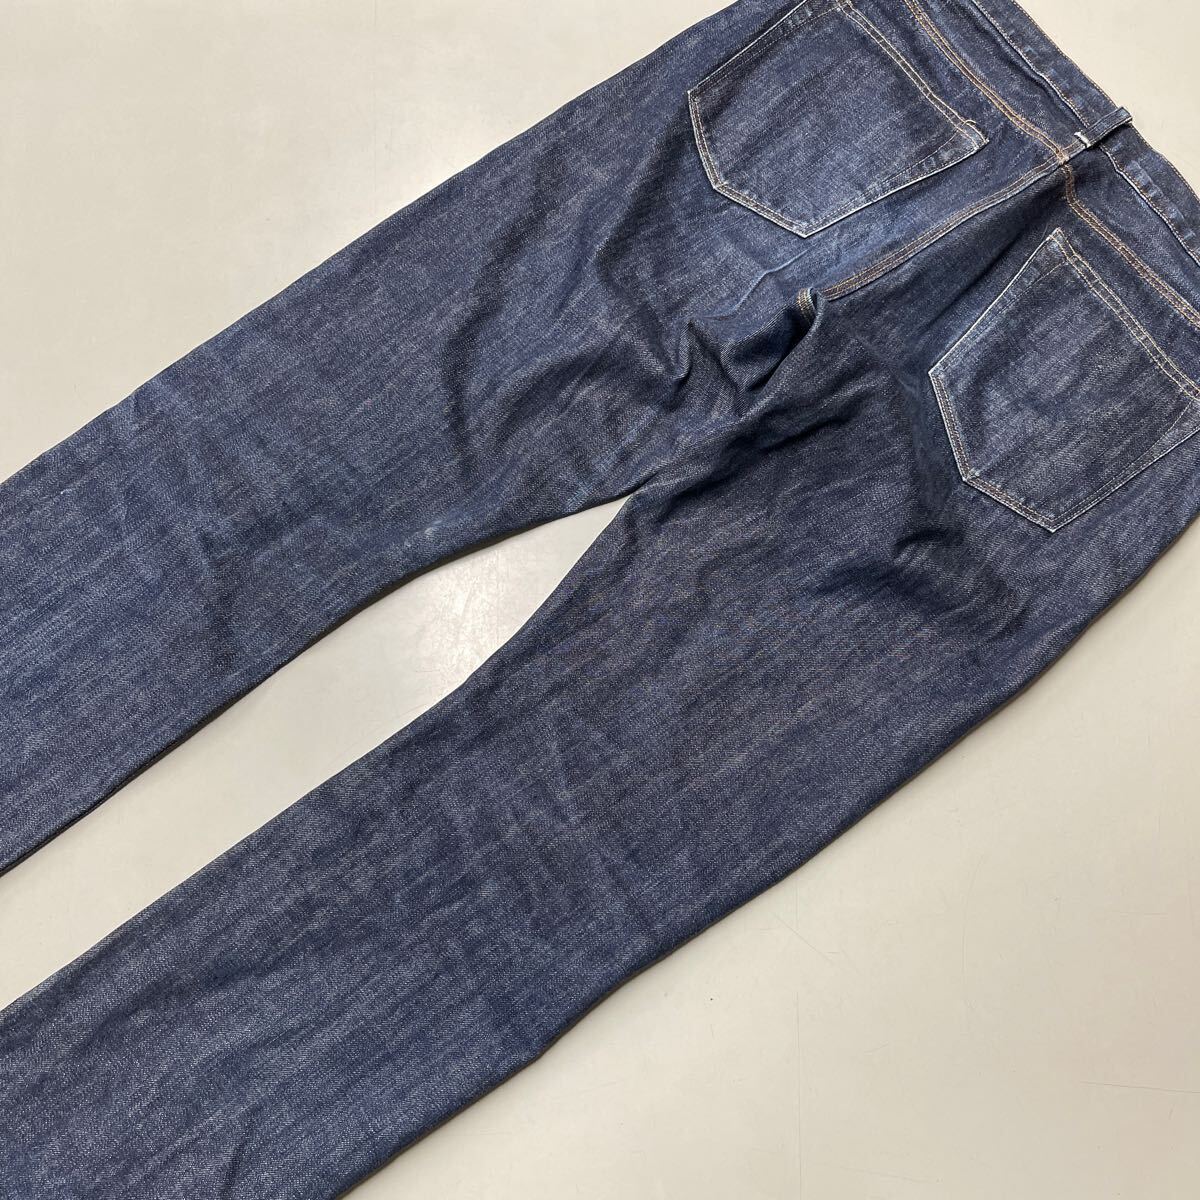  J Crew J.CREW jeans Denim pants 34 -inch men's slim strut SLIM STRAIGHT cell biji red ear bottom 